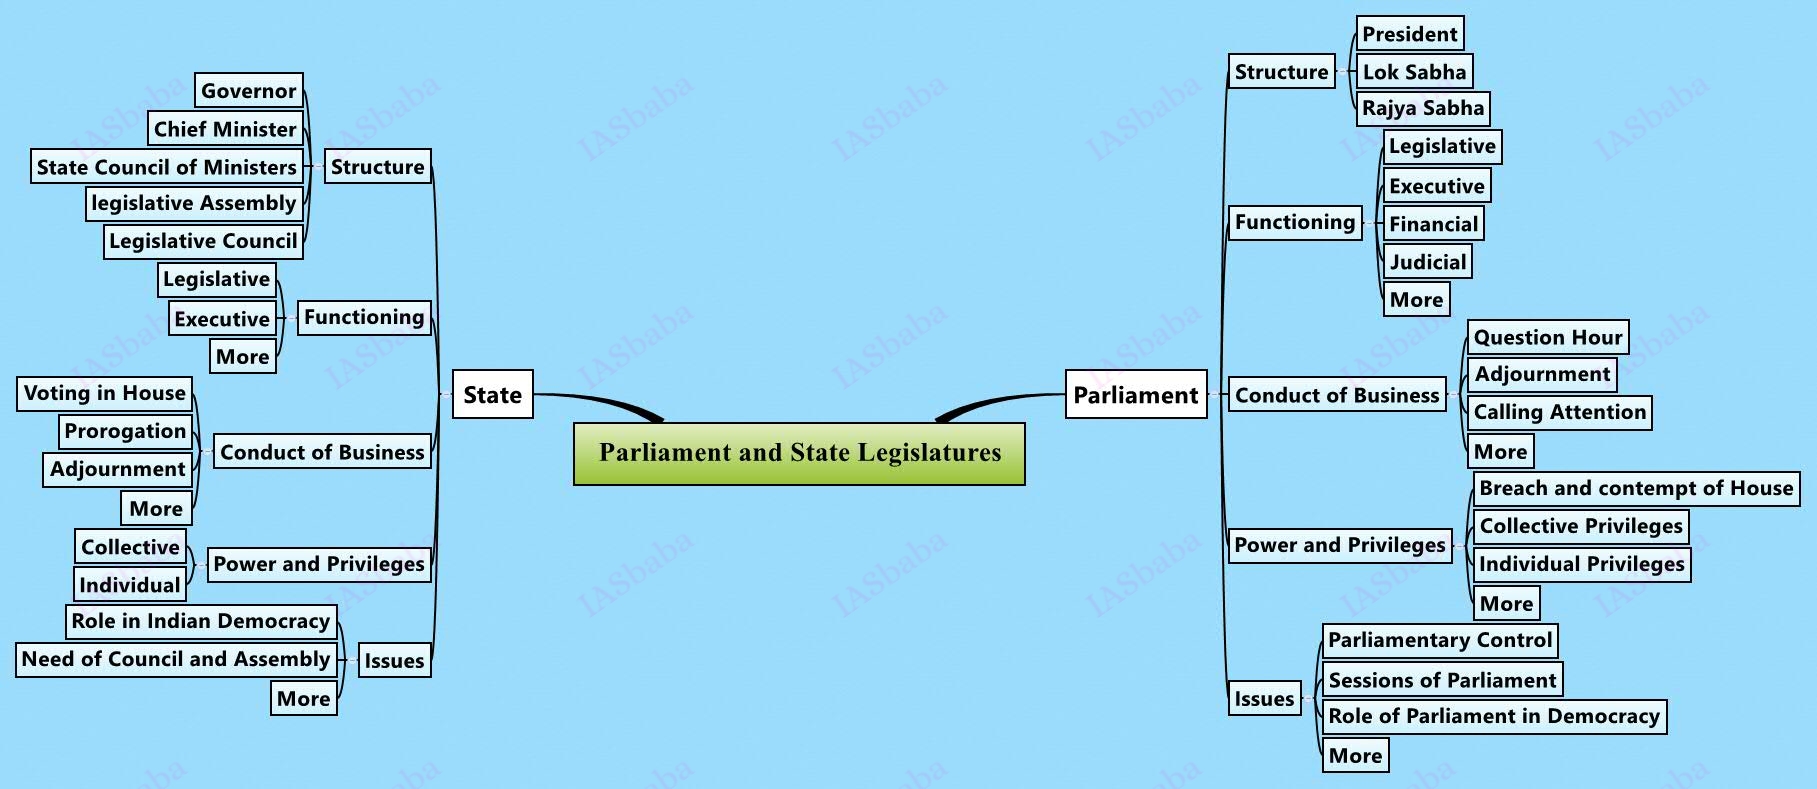 Parliament-and-State-Legislatures